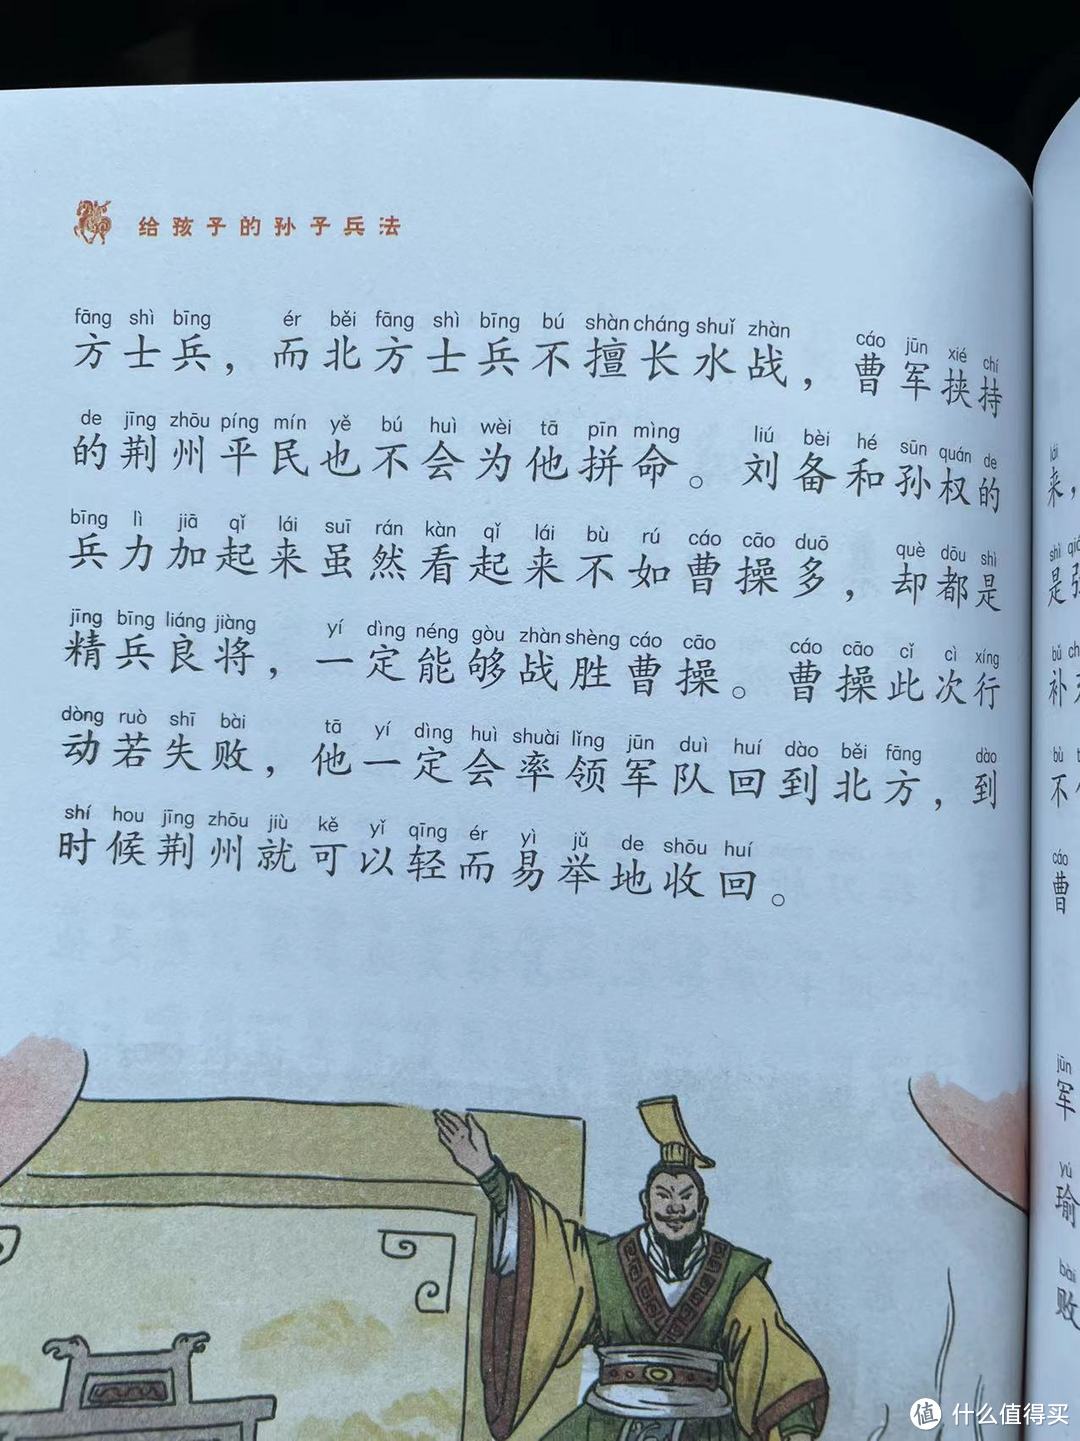 《给孩子的孙子兵法》之赤壁之战的刘备孙权合作